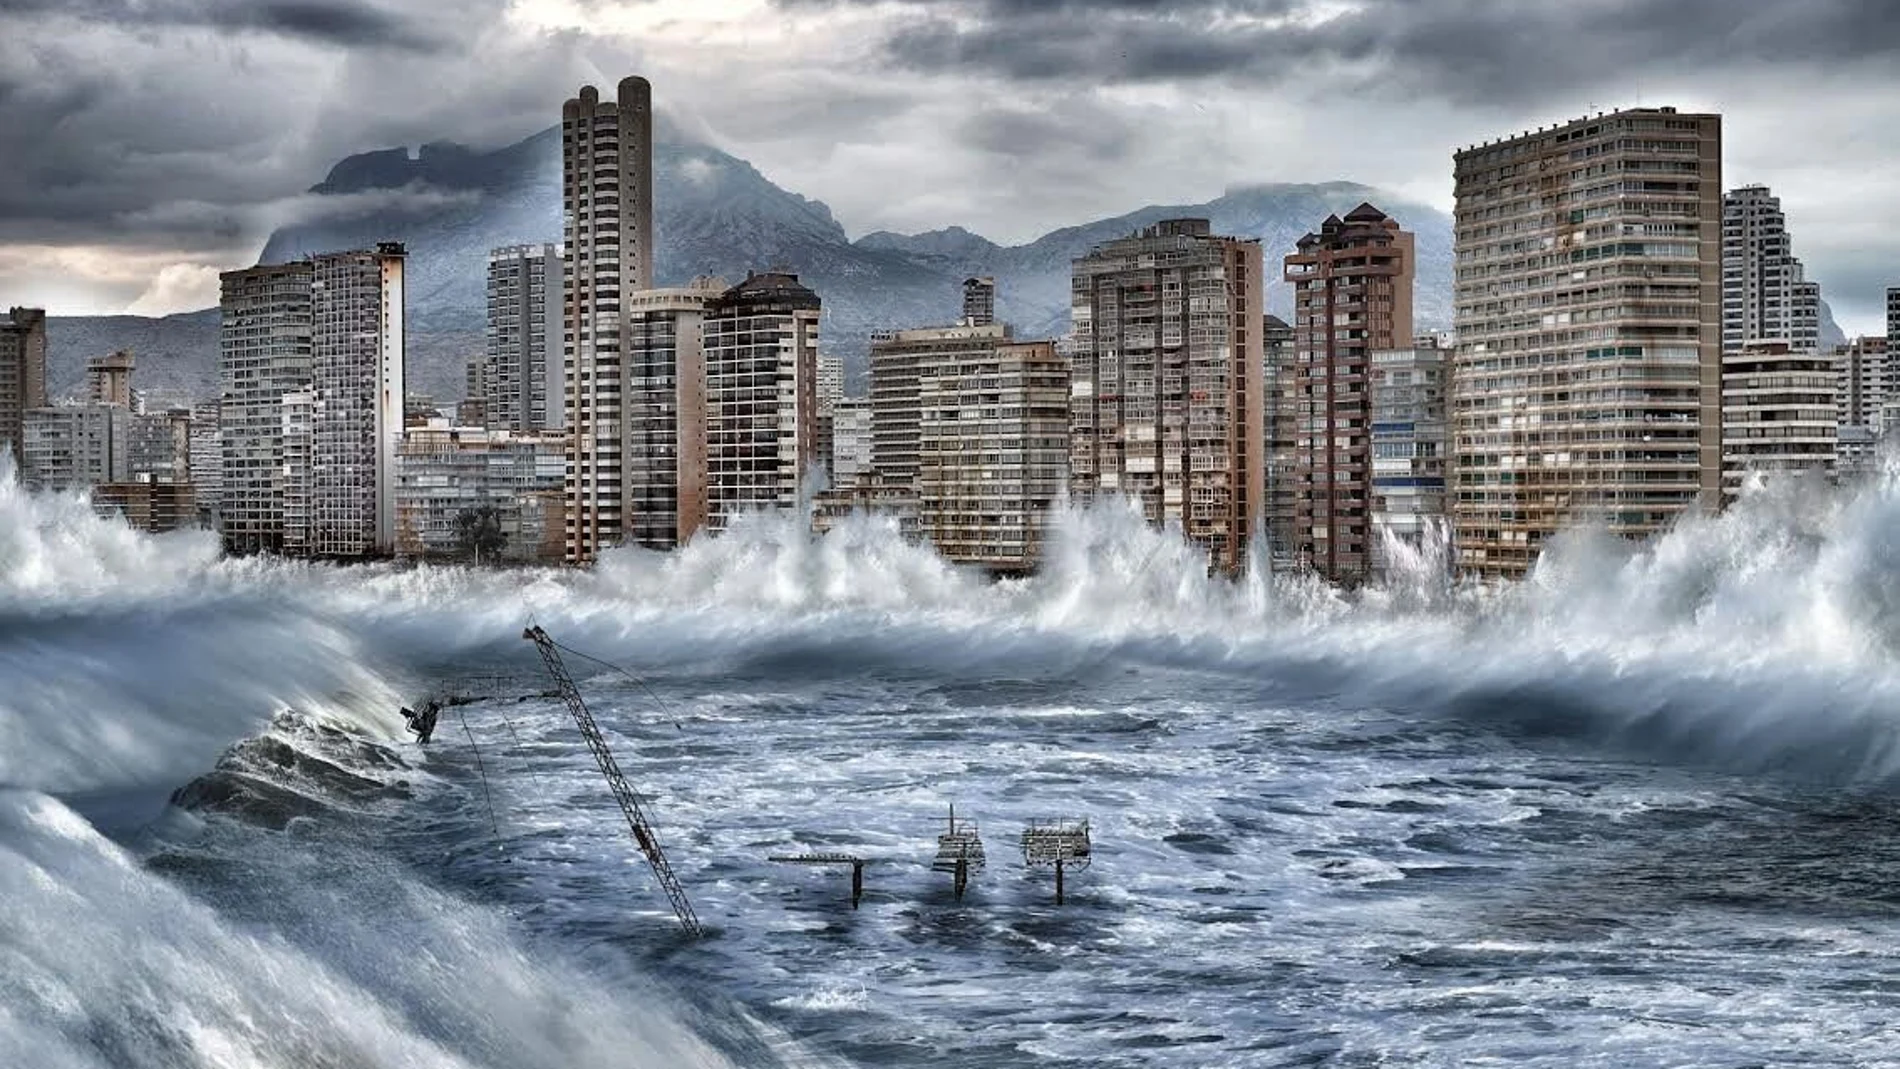 Imagen cedida por Greenpeace de un montaje de como se vería afectada la ciudad de Benidorm por la subida del nivel del mar en 2100